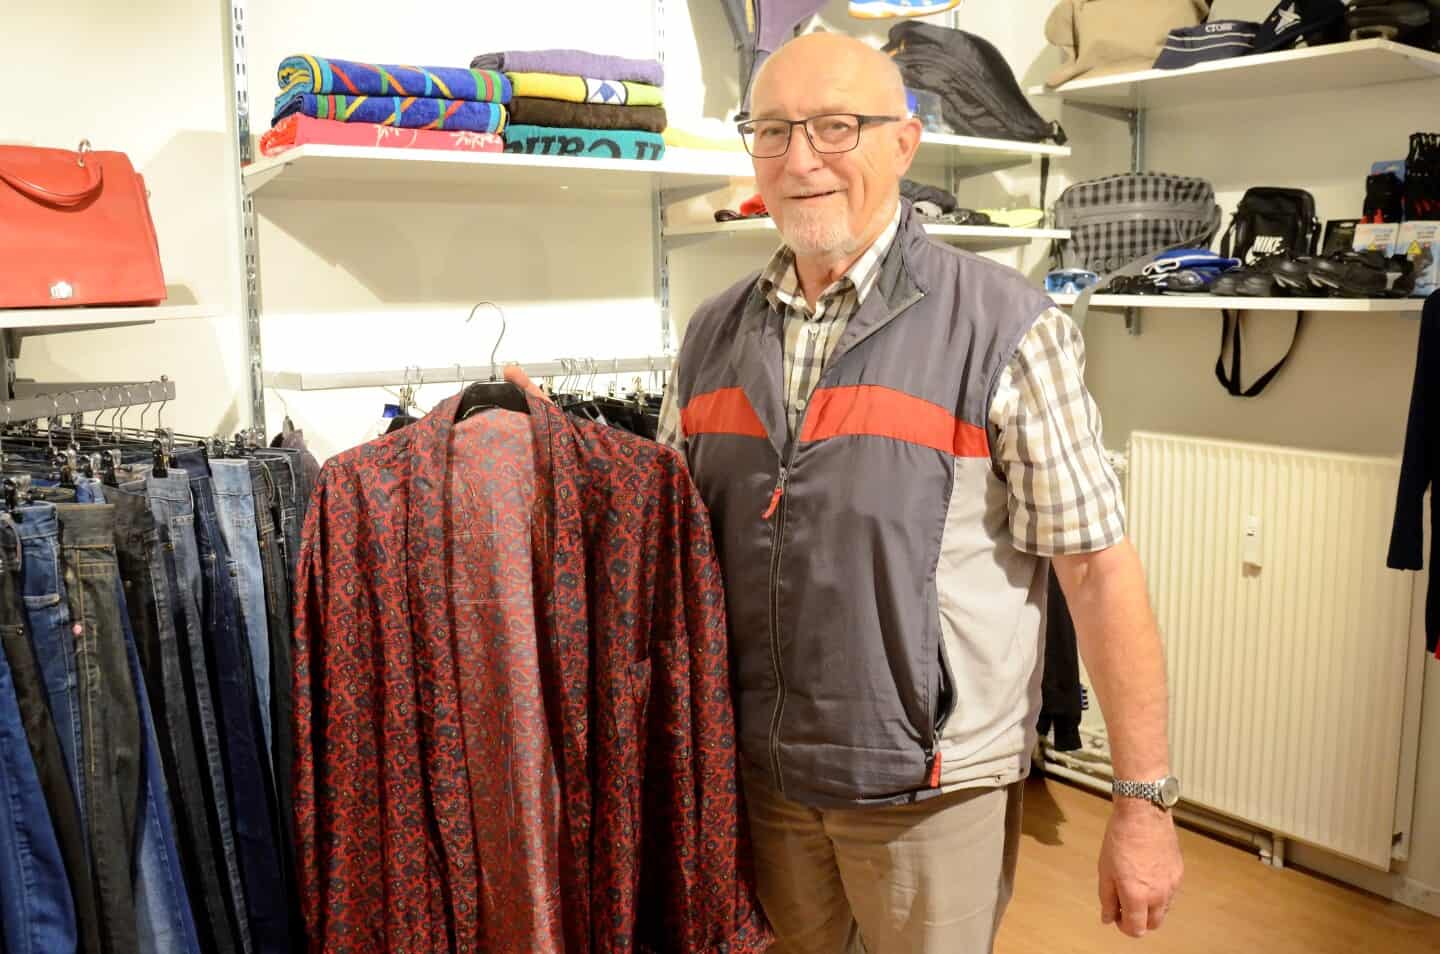 Mellemøsten Hvert år Vil have 2400 stykke brugt tøj er klar til salg | ugeavisen.dk